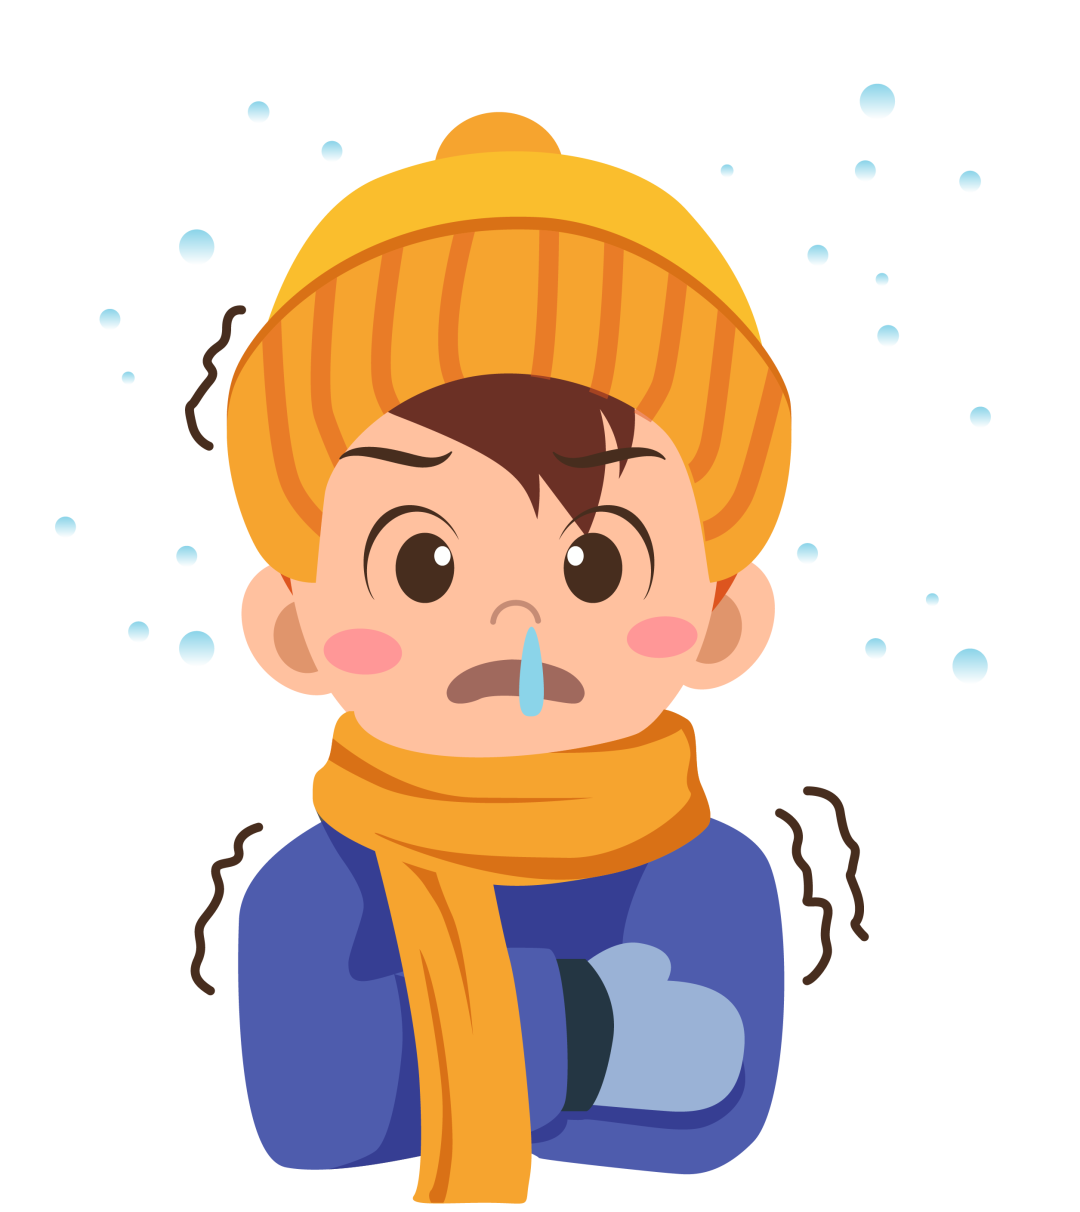 孩子一直流鼻涕,到底是感冒还是鼻炎?